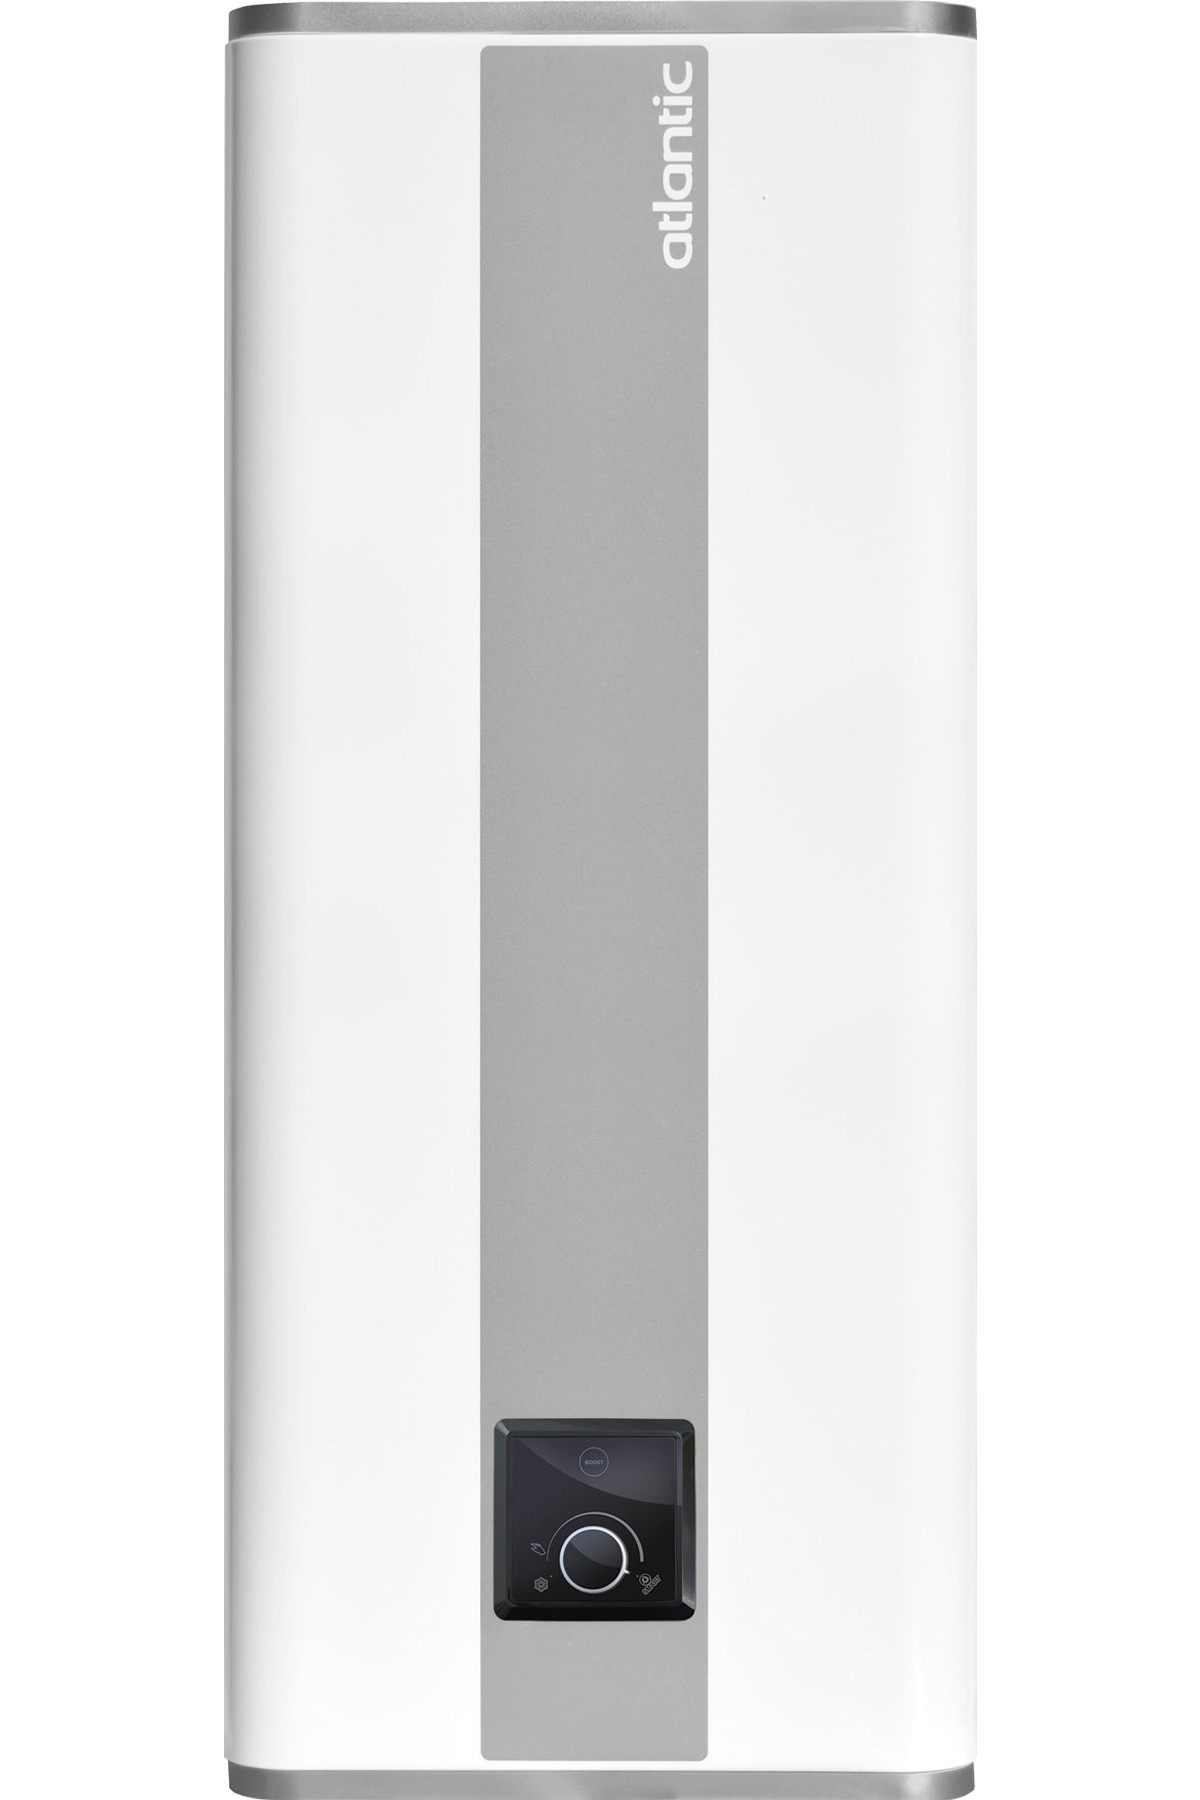 Бойлер Atlantic Vertigo Steatite 100 MP 080 F220-2-EC (уцененный товар) в интернет-магазине, главное фото